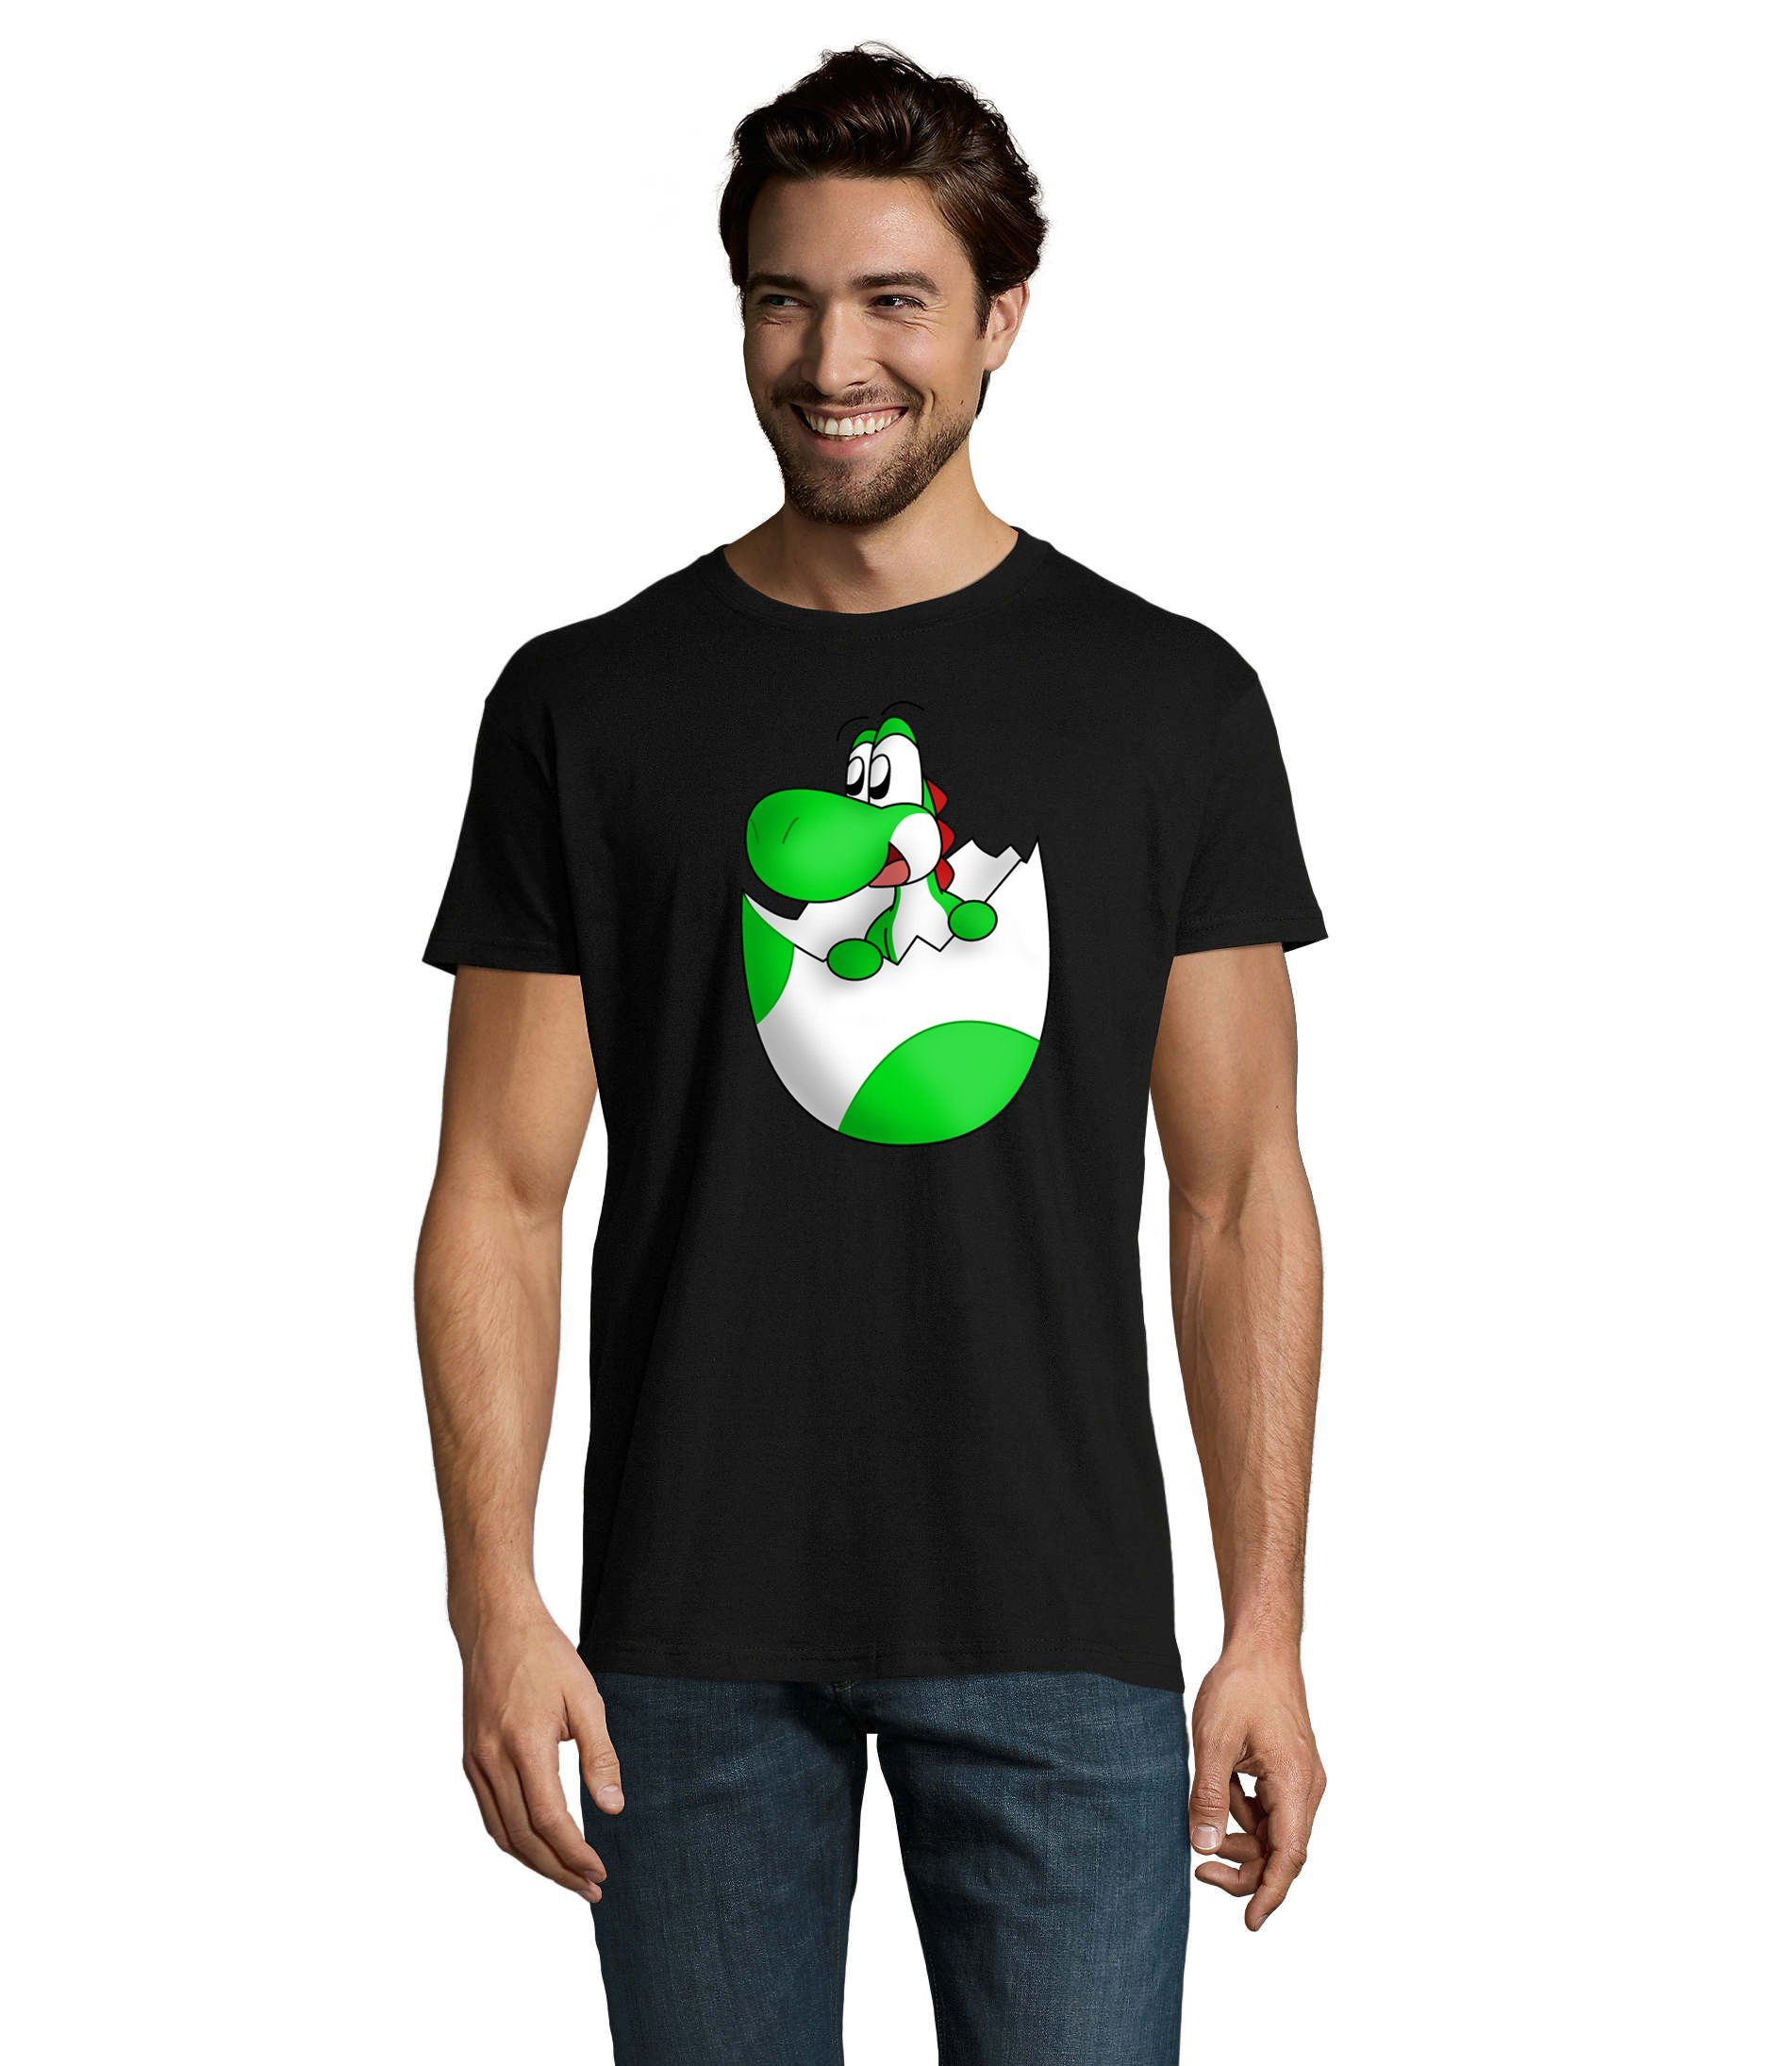 & Yoshi Baby Spiel Gaming T-Shirt Schwarz Brownie Blondie Herren Nintendo Konsole Ei Mario